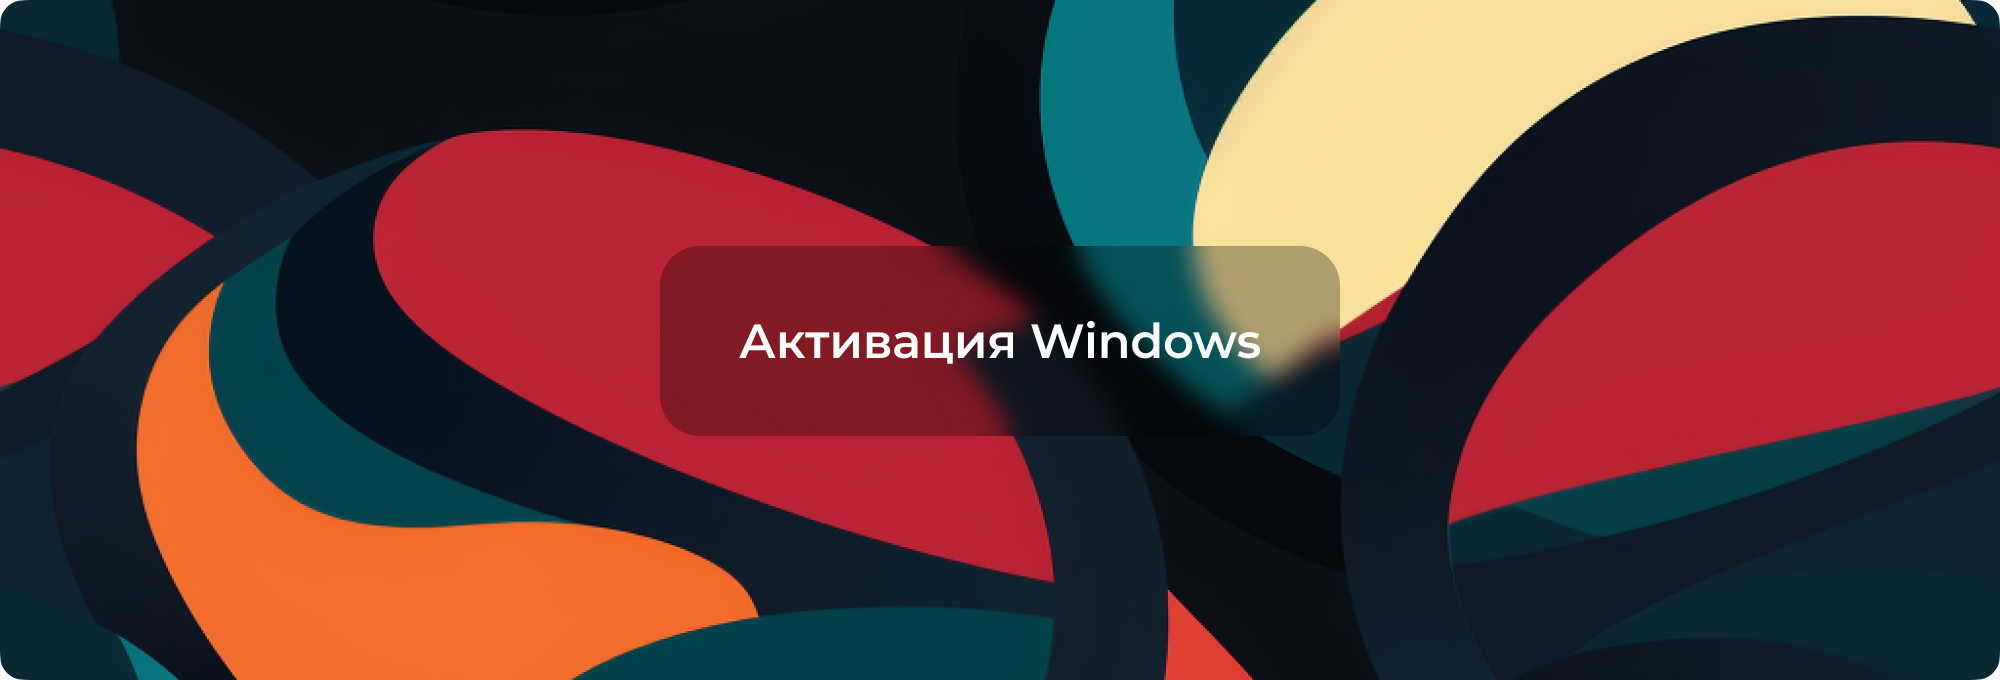 Активация Windows: Чтобы активировать Windows, перейдите в раздел Параметры